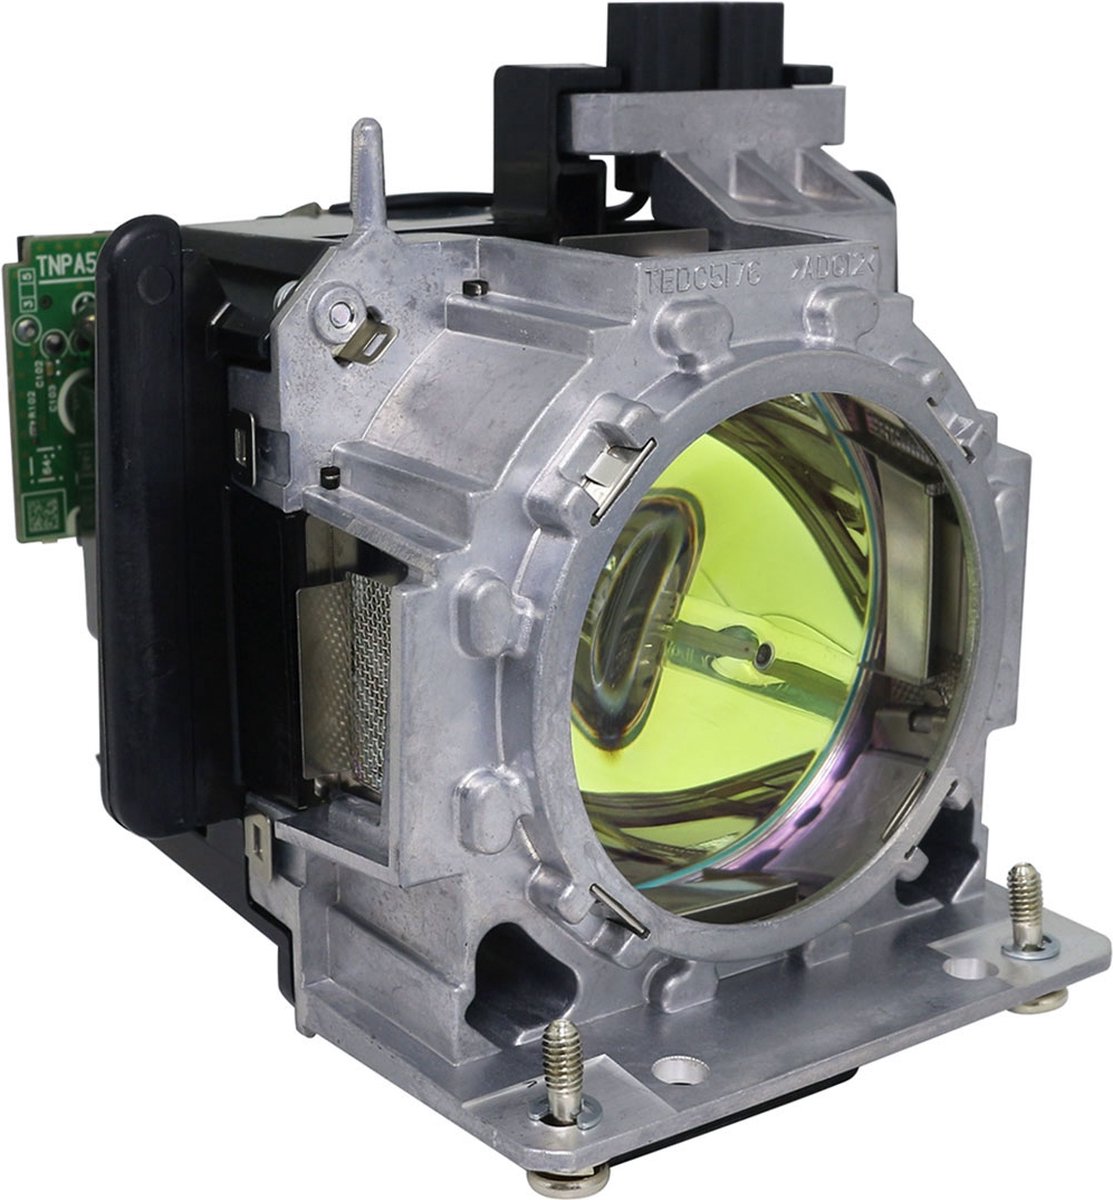 Beamerlamp geschikt voor de PANASONIC PT-DZ110X beamer, lamp code ET-LAD310. Bevat originele UHP lamp, prestaties gelijk aan origineel.